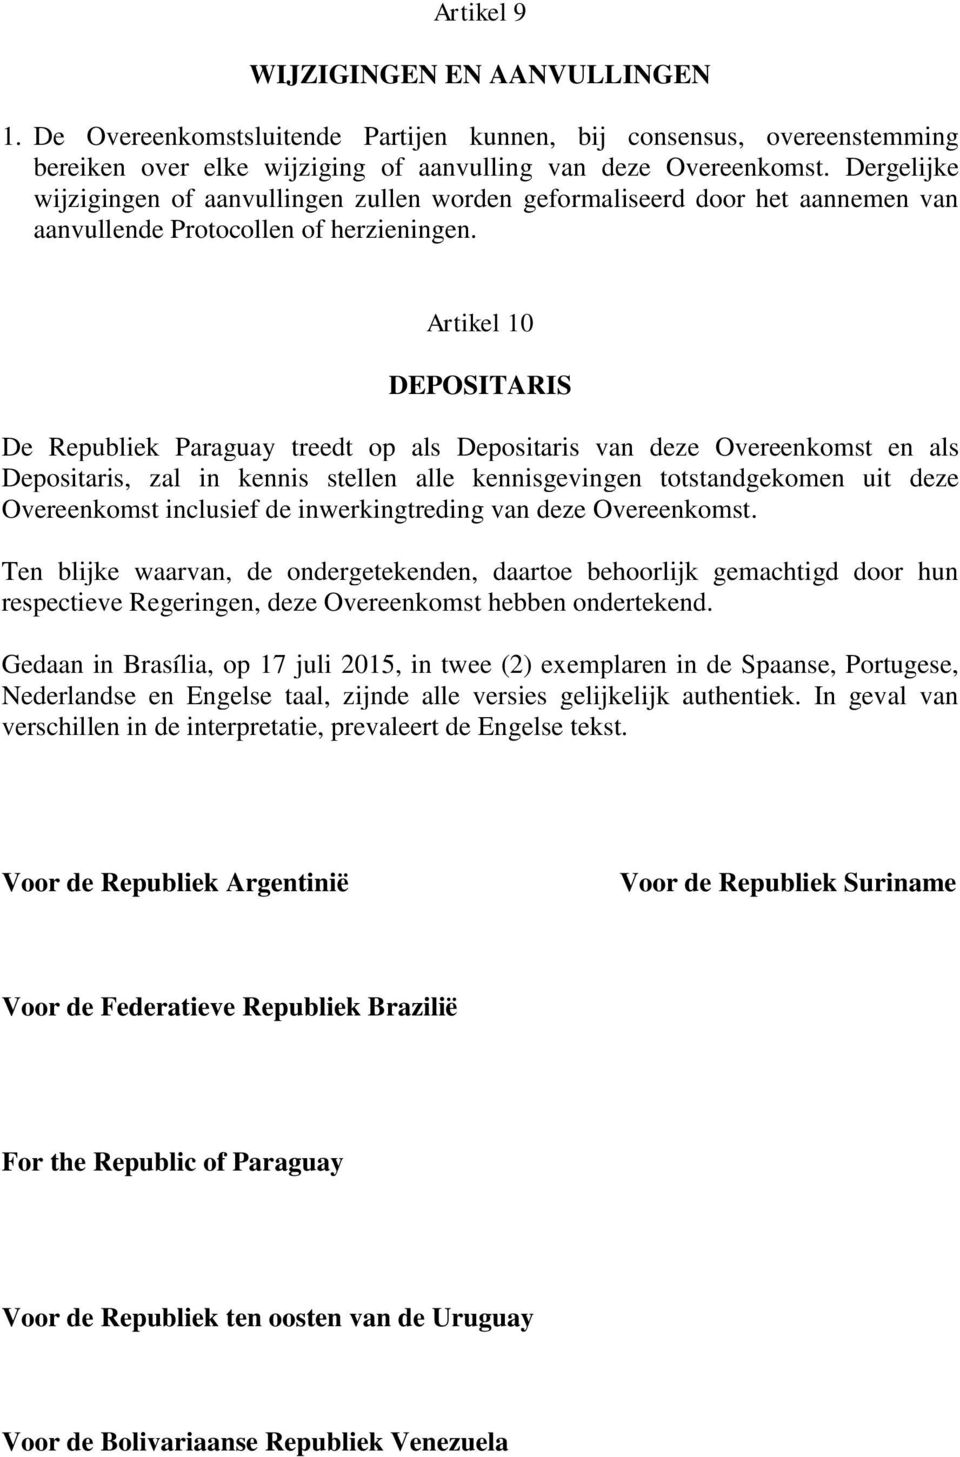 Artikel 10 DEPOSITARIS De Republiek Paraguay treedt op als Depositaris van deze Overeenkomst en als Depositaris, zal in kennis stellen alle kennisgevingen totstandgekomen uit deze Overeenkomst